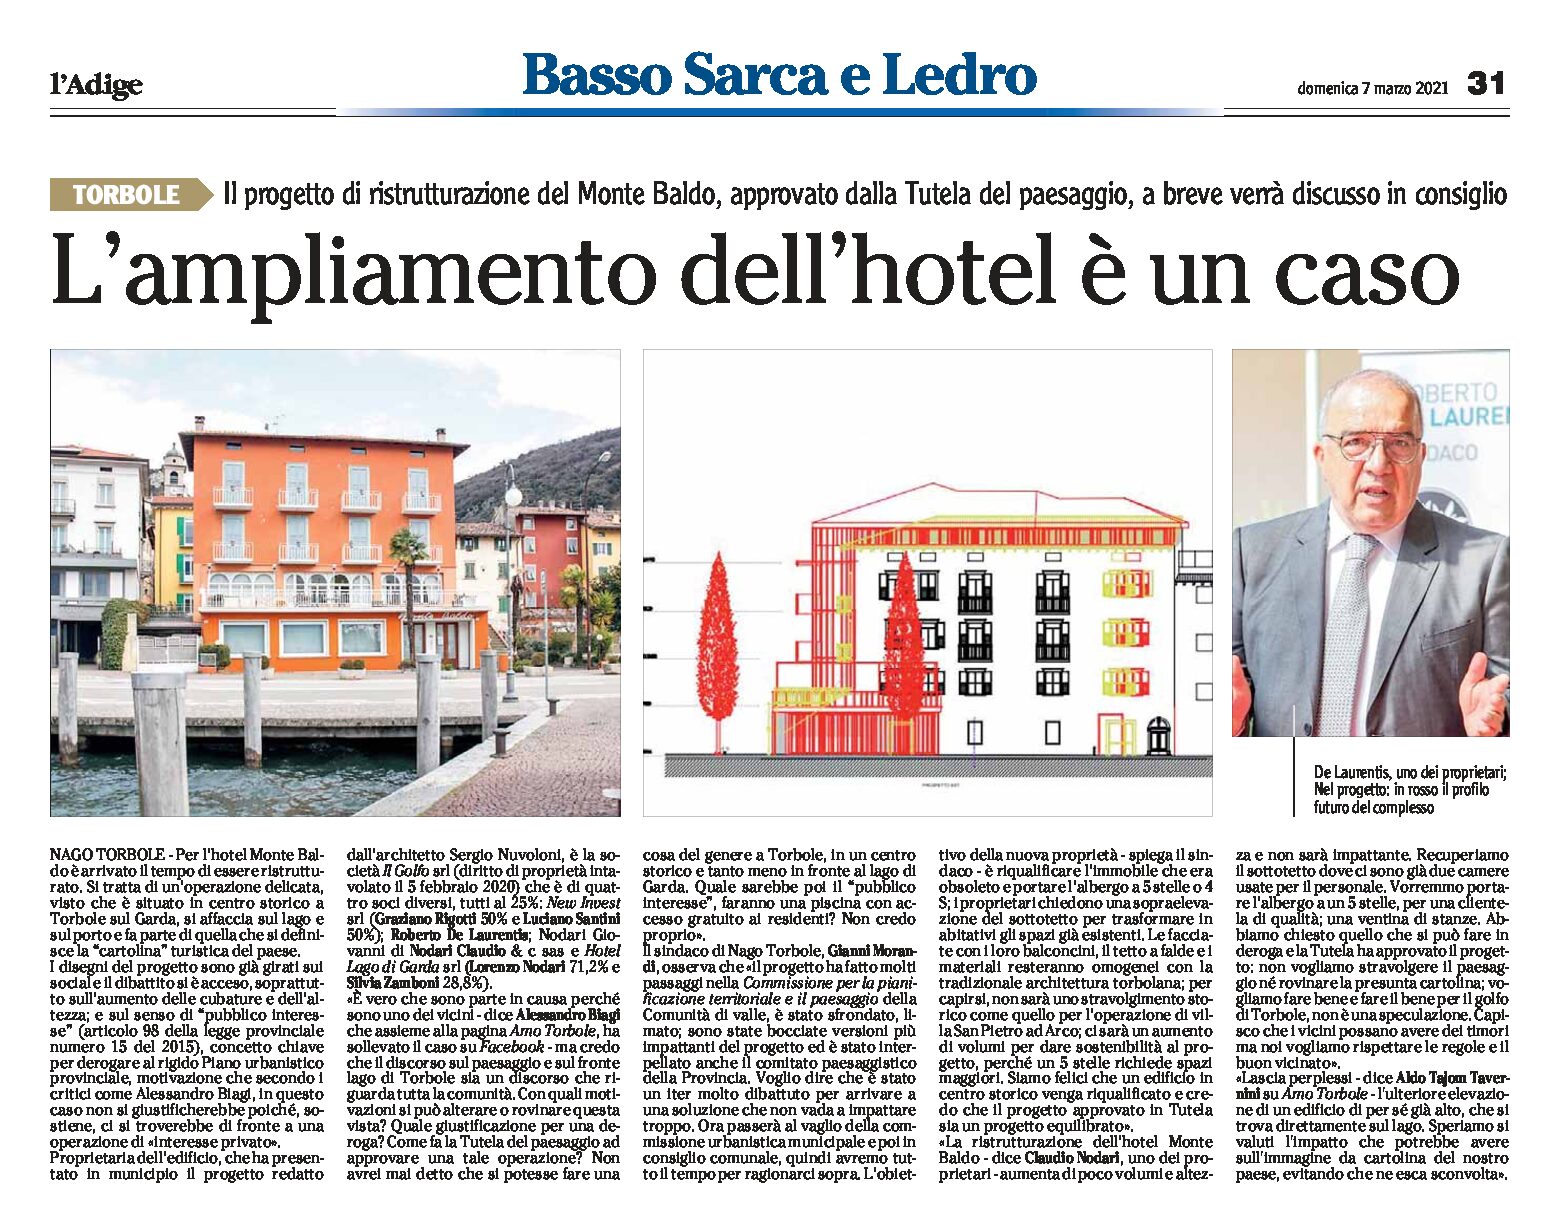 Torbole, hotel Monte Baldo: il progetto di ristrutturazione, approvato dalla Tutela del paesaggio, è un caso